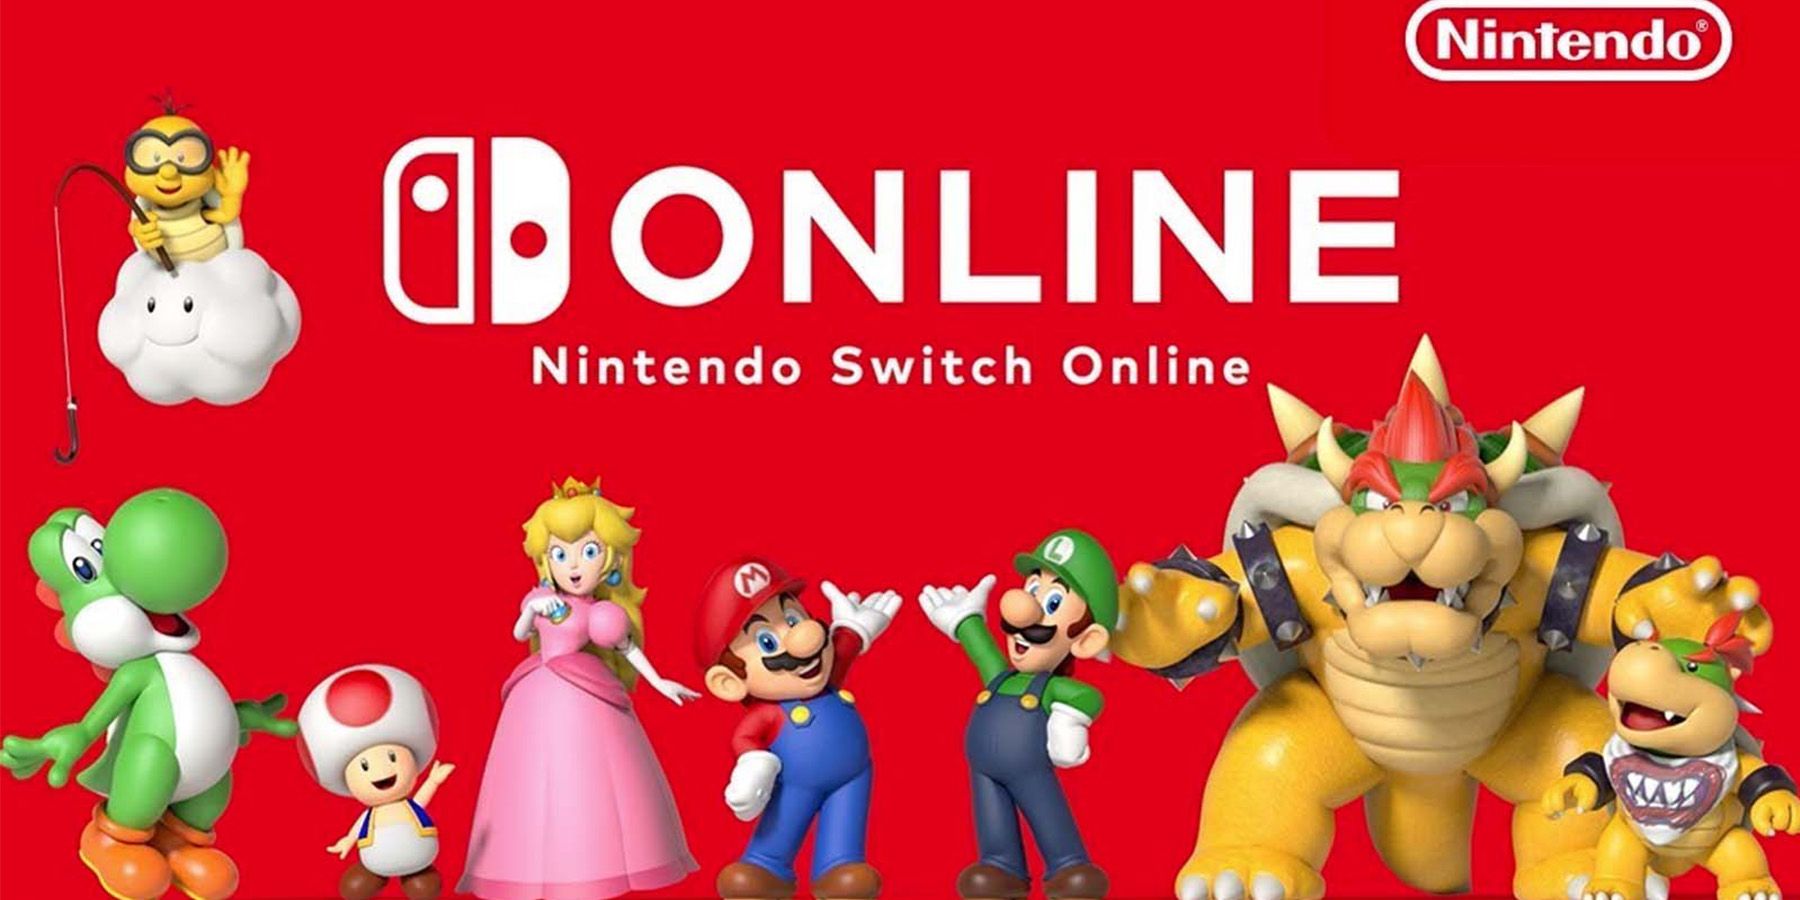 Megéri -e a Nintendo Switch Online bővítőcsomagja az árat?